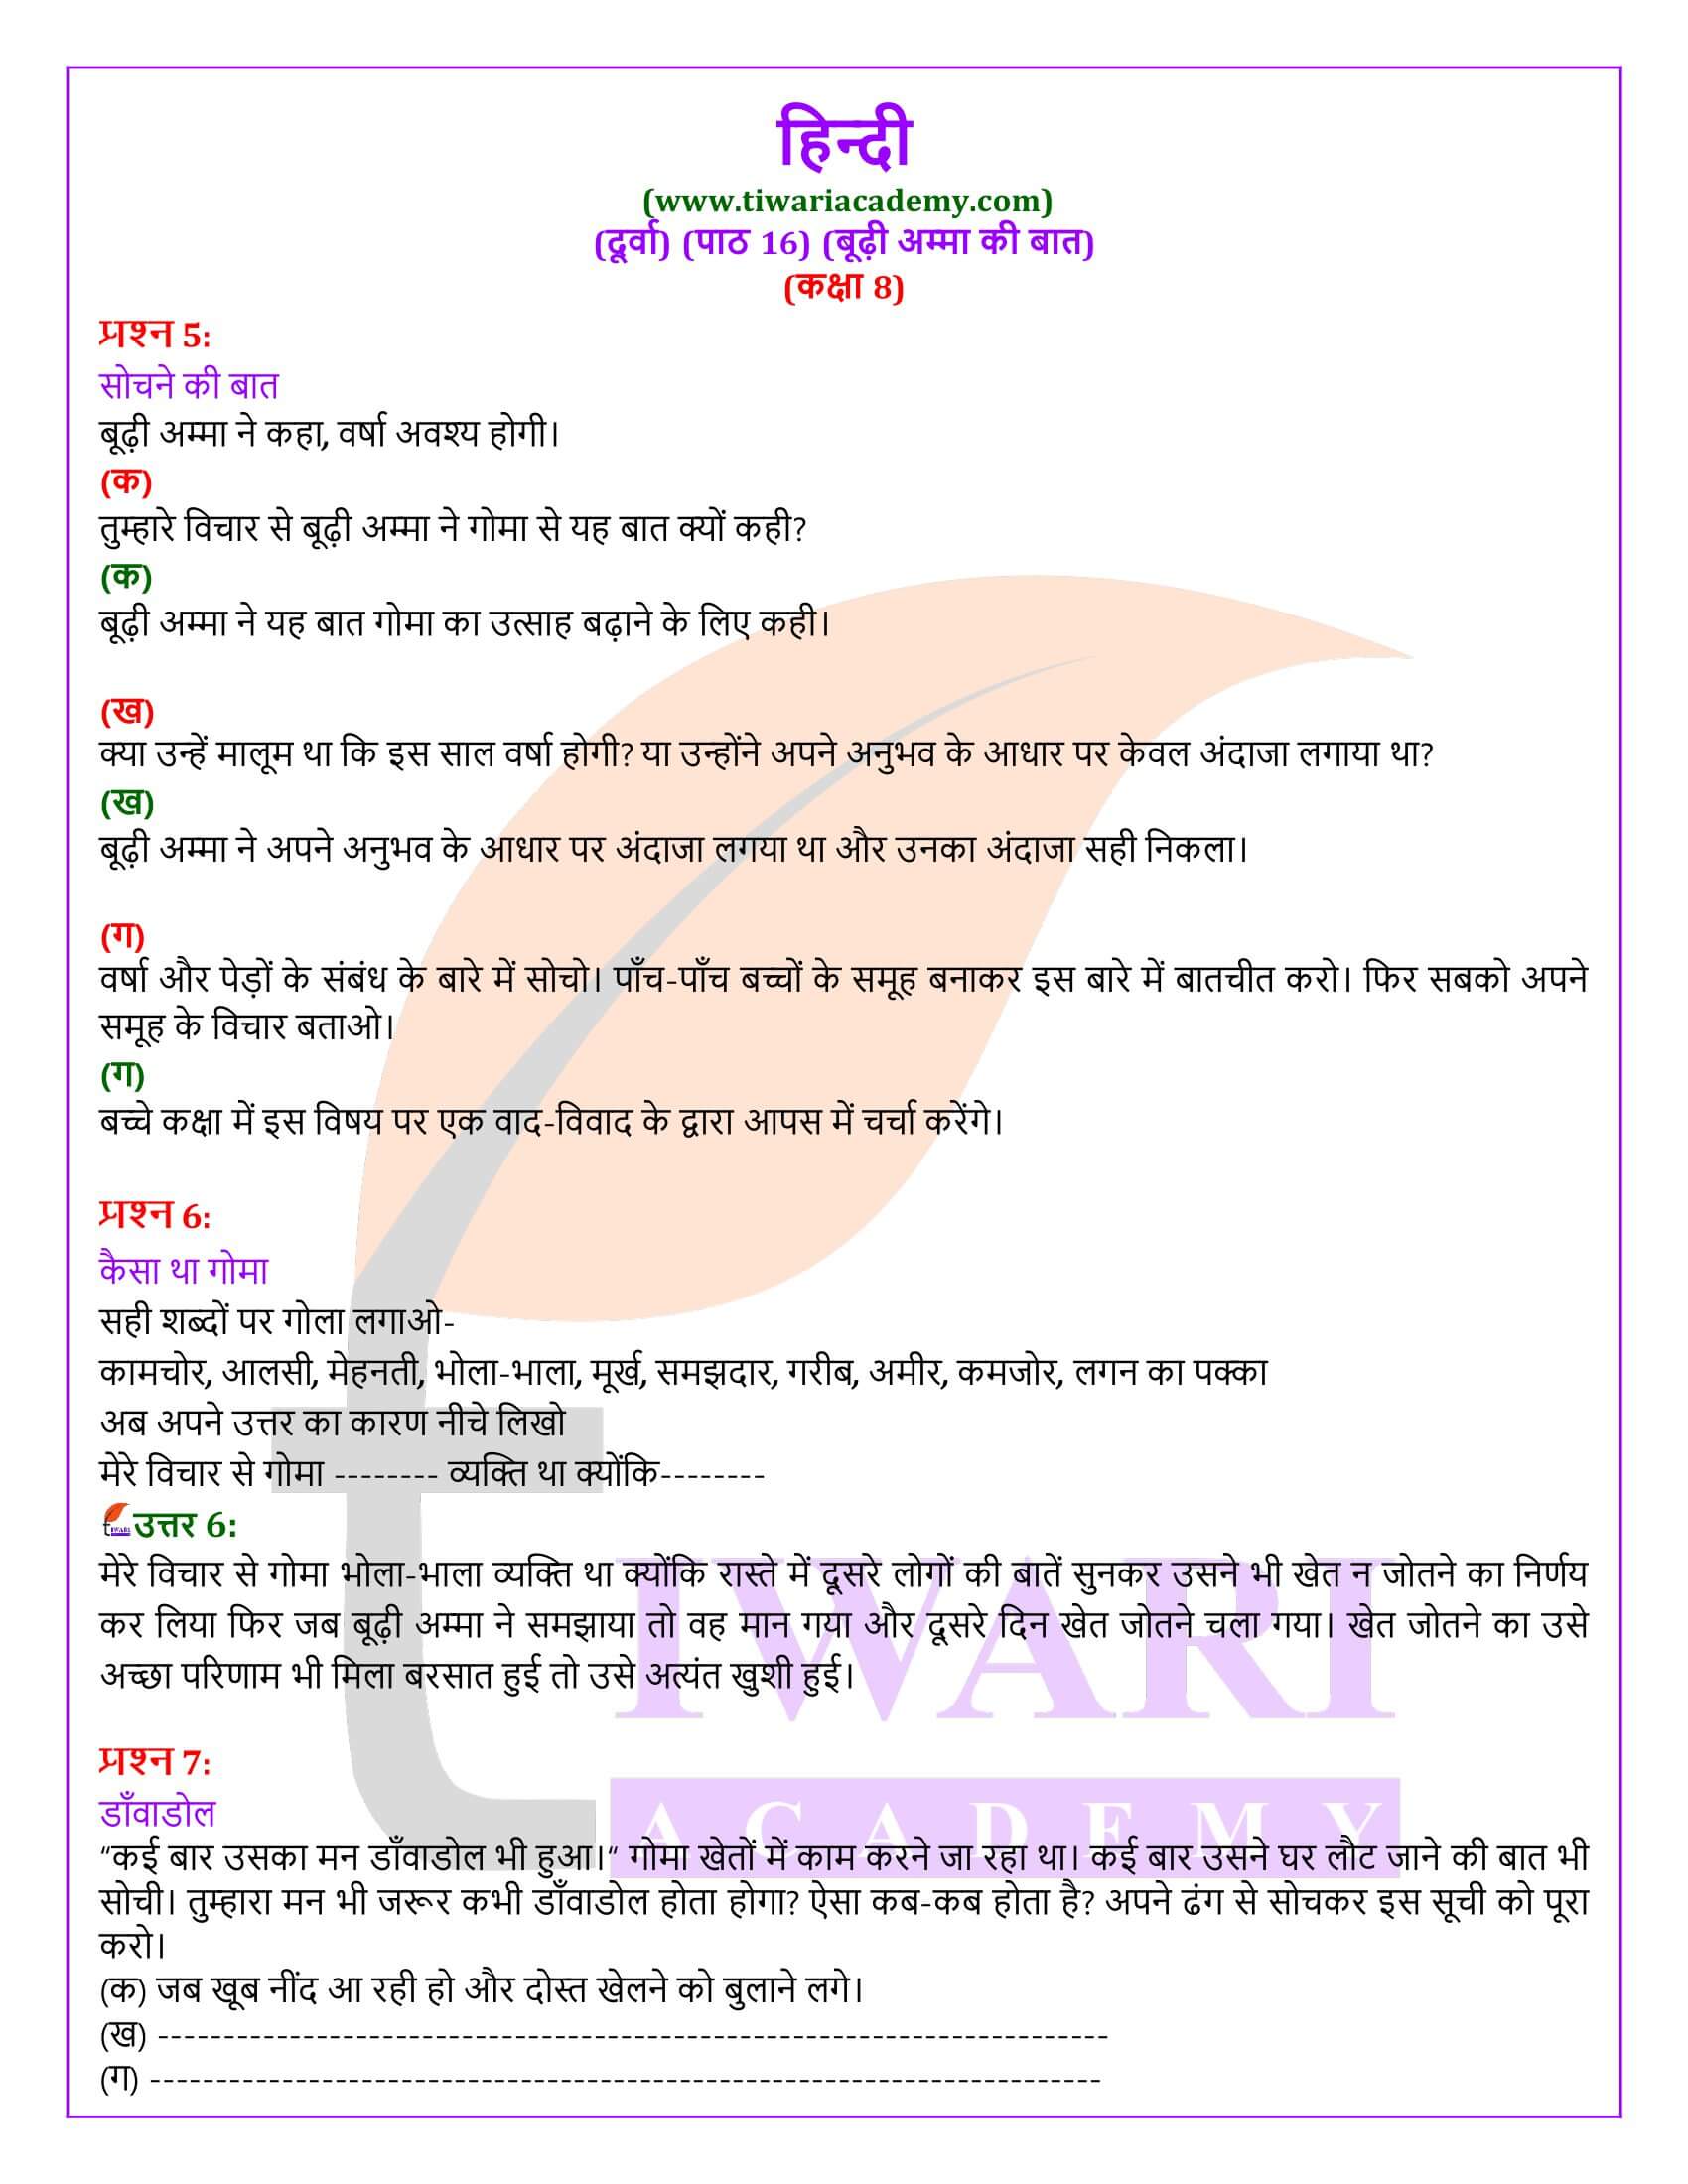 कक्षा 8 हिंदी दूर्वा अध्याय 16 के प्रश्न उत्तर